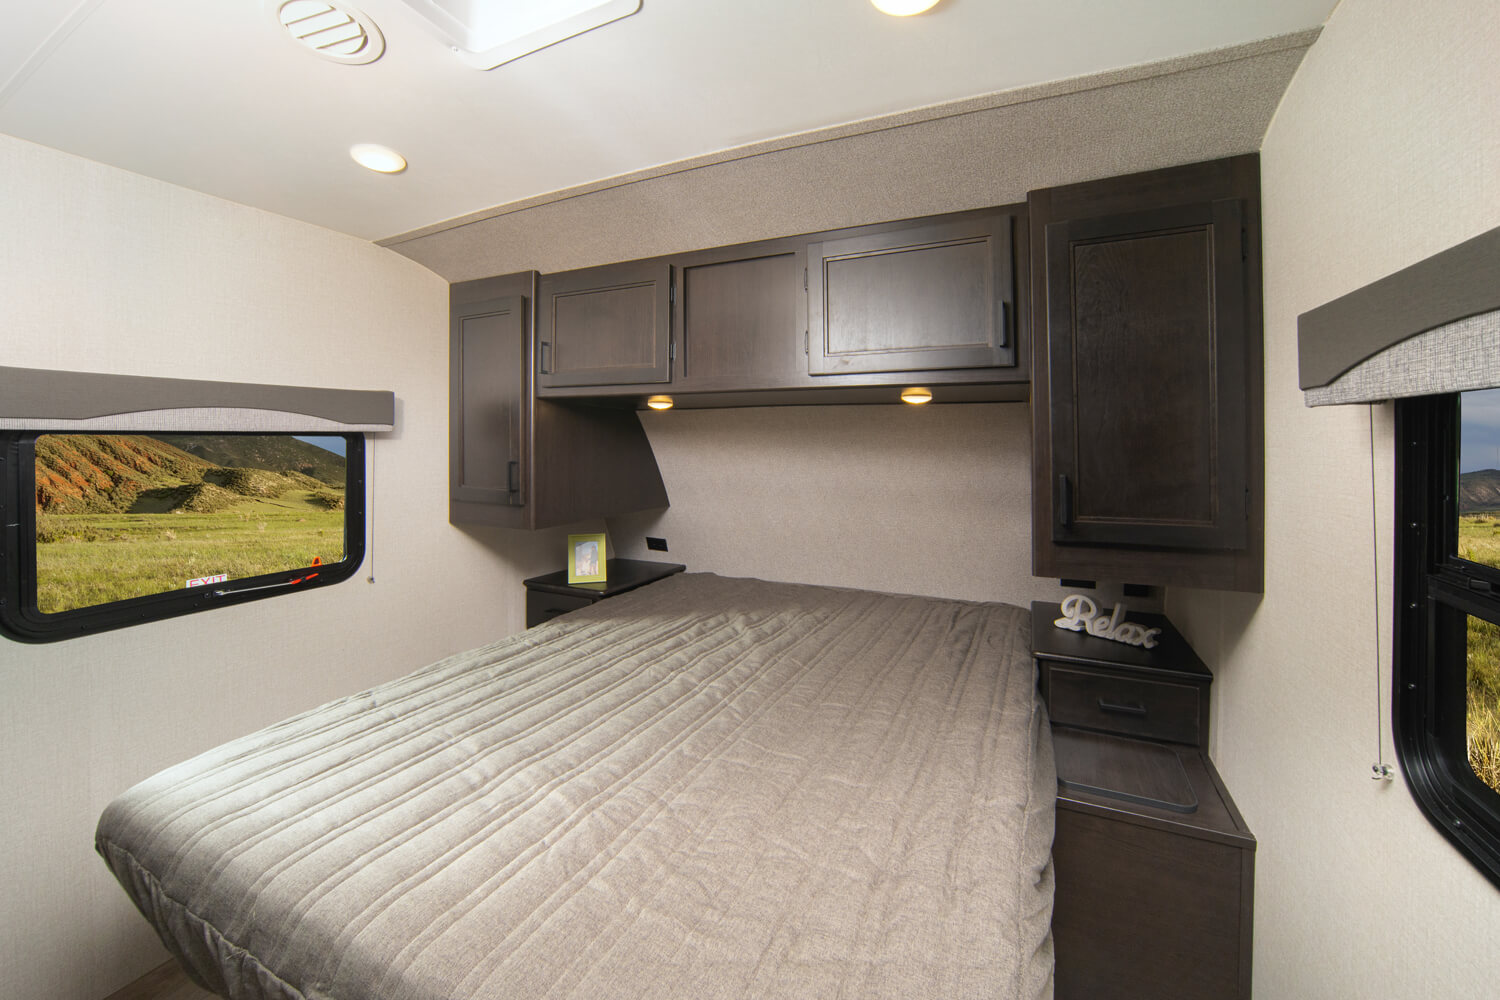 2021 Silverstar Limited 275RLS Bedroom 